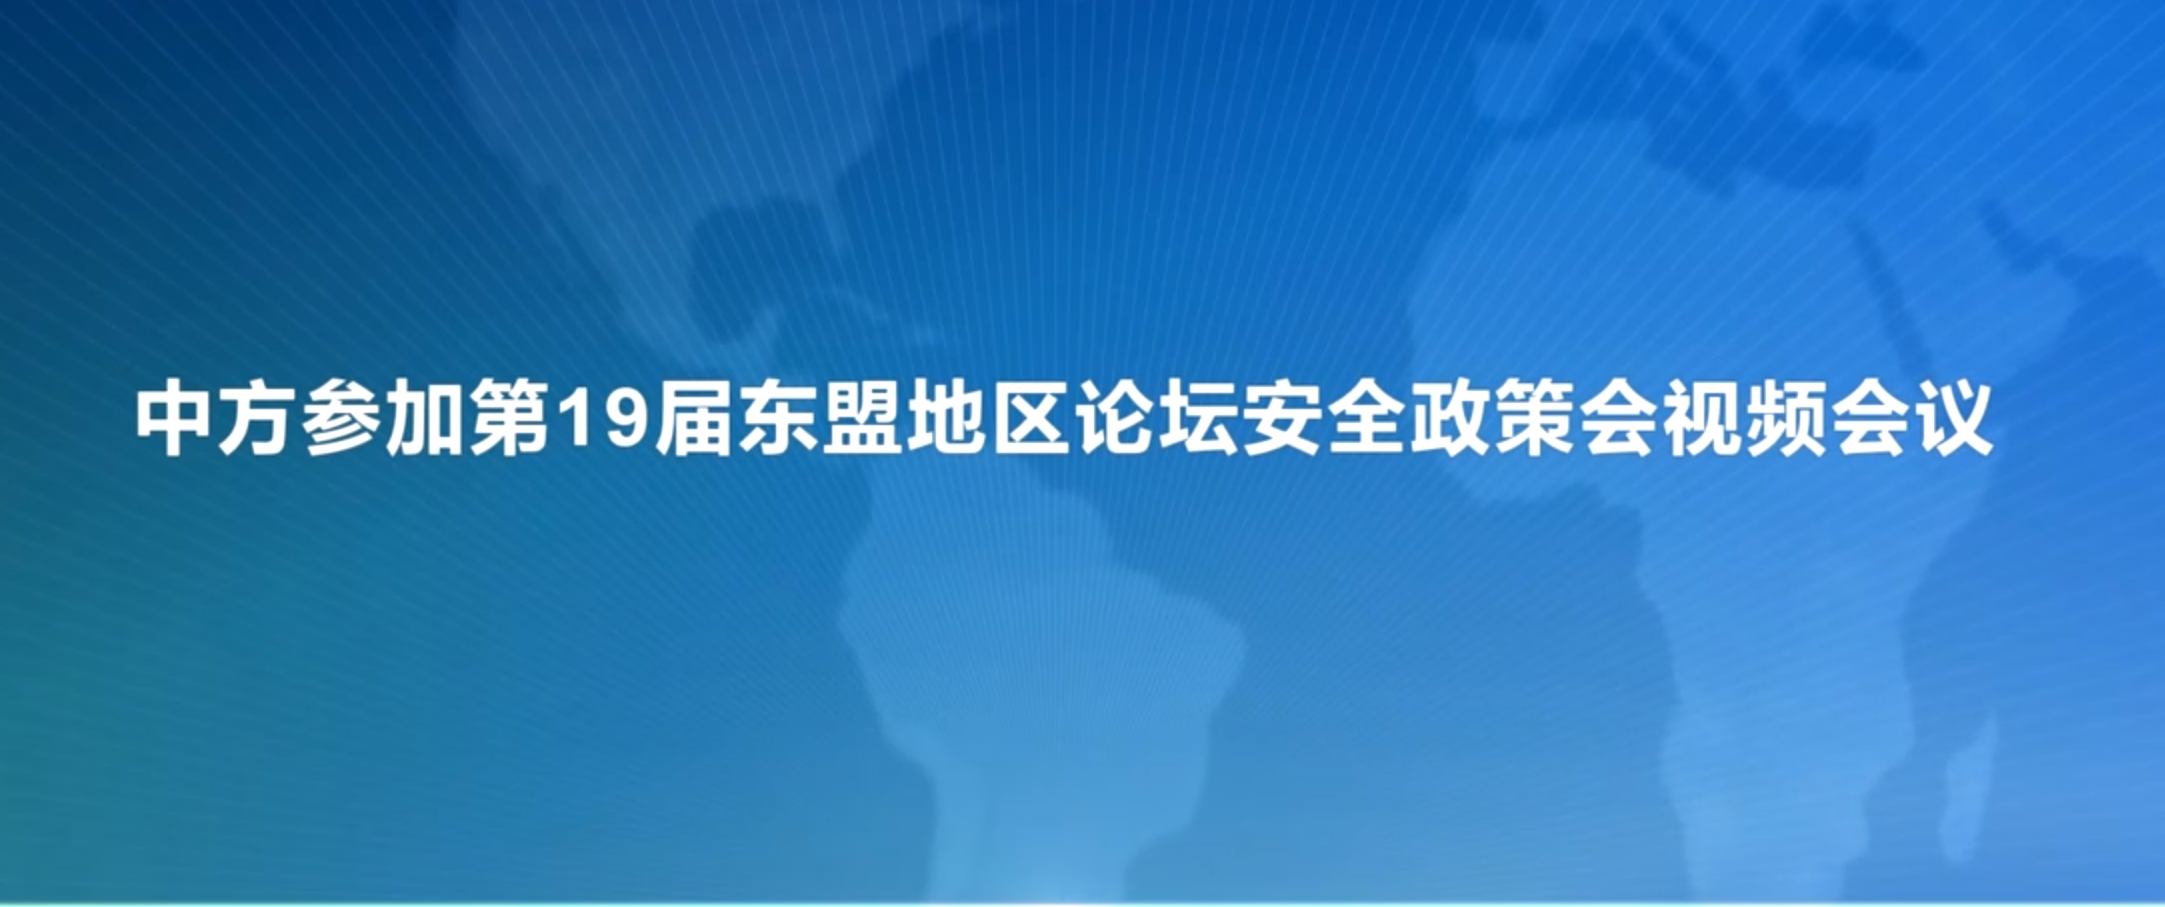 中方参加第19届东盟地区论坛安全政策会视频会议